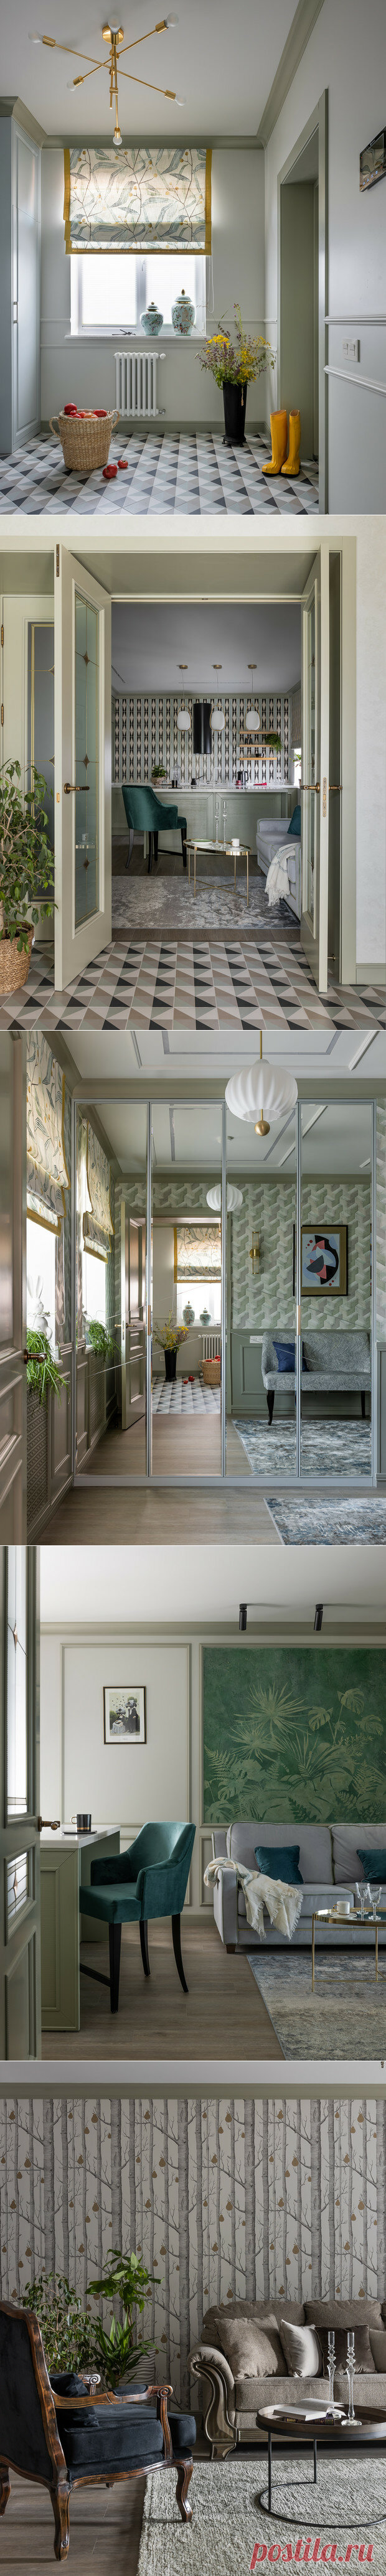 Роскошный дом 237 кв. м в модном стиле Contemporary с нежными зелеными акцентами | ELLE Decoration | Яндекс Дзен